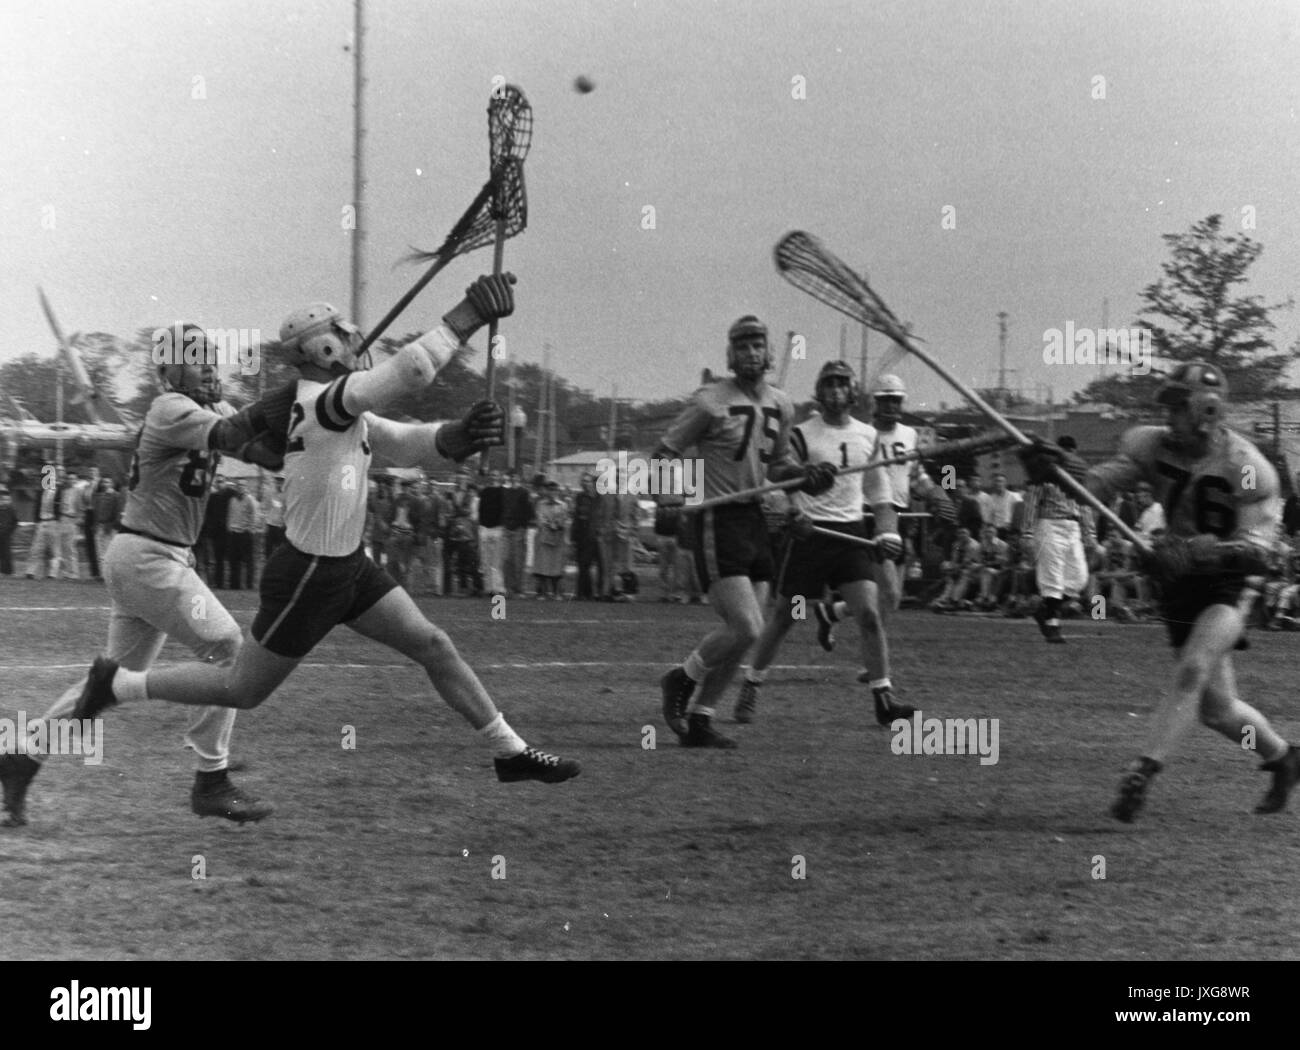 Lacrosse geschossene Tätigkeit während einer unidentifed übereinstimmen, verschiedene Akteure versuchen, die Kugel, die in der Luft, 1950 zu fassen. Stockfoto